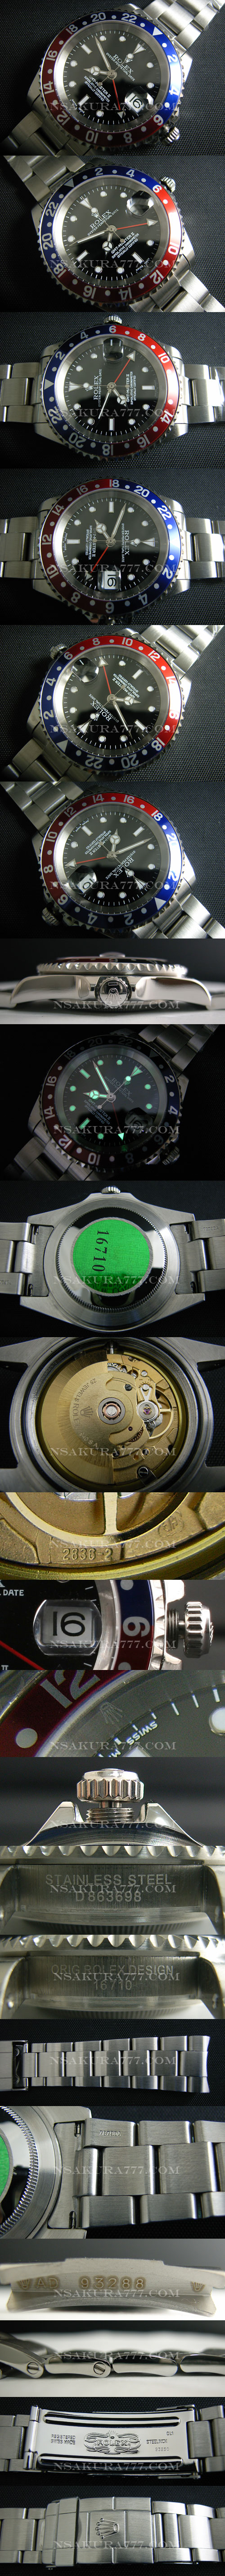 レプリカ時計ロレックス 2836-2ムーブ搭載 GMT針単独調整可能 - ウインドウを閉じる